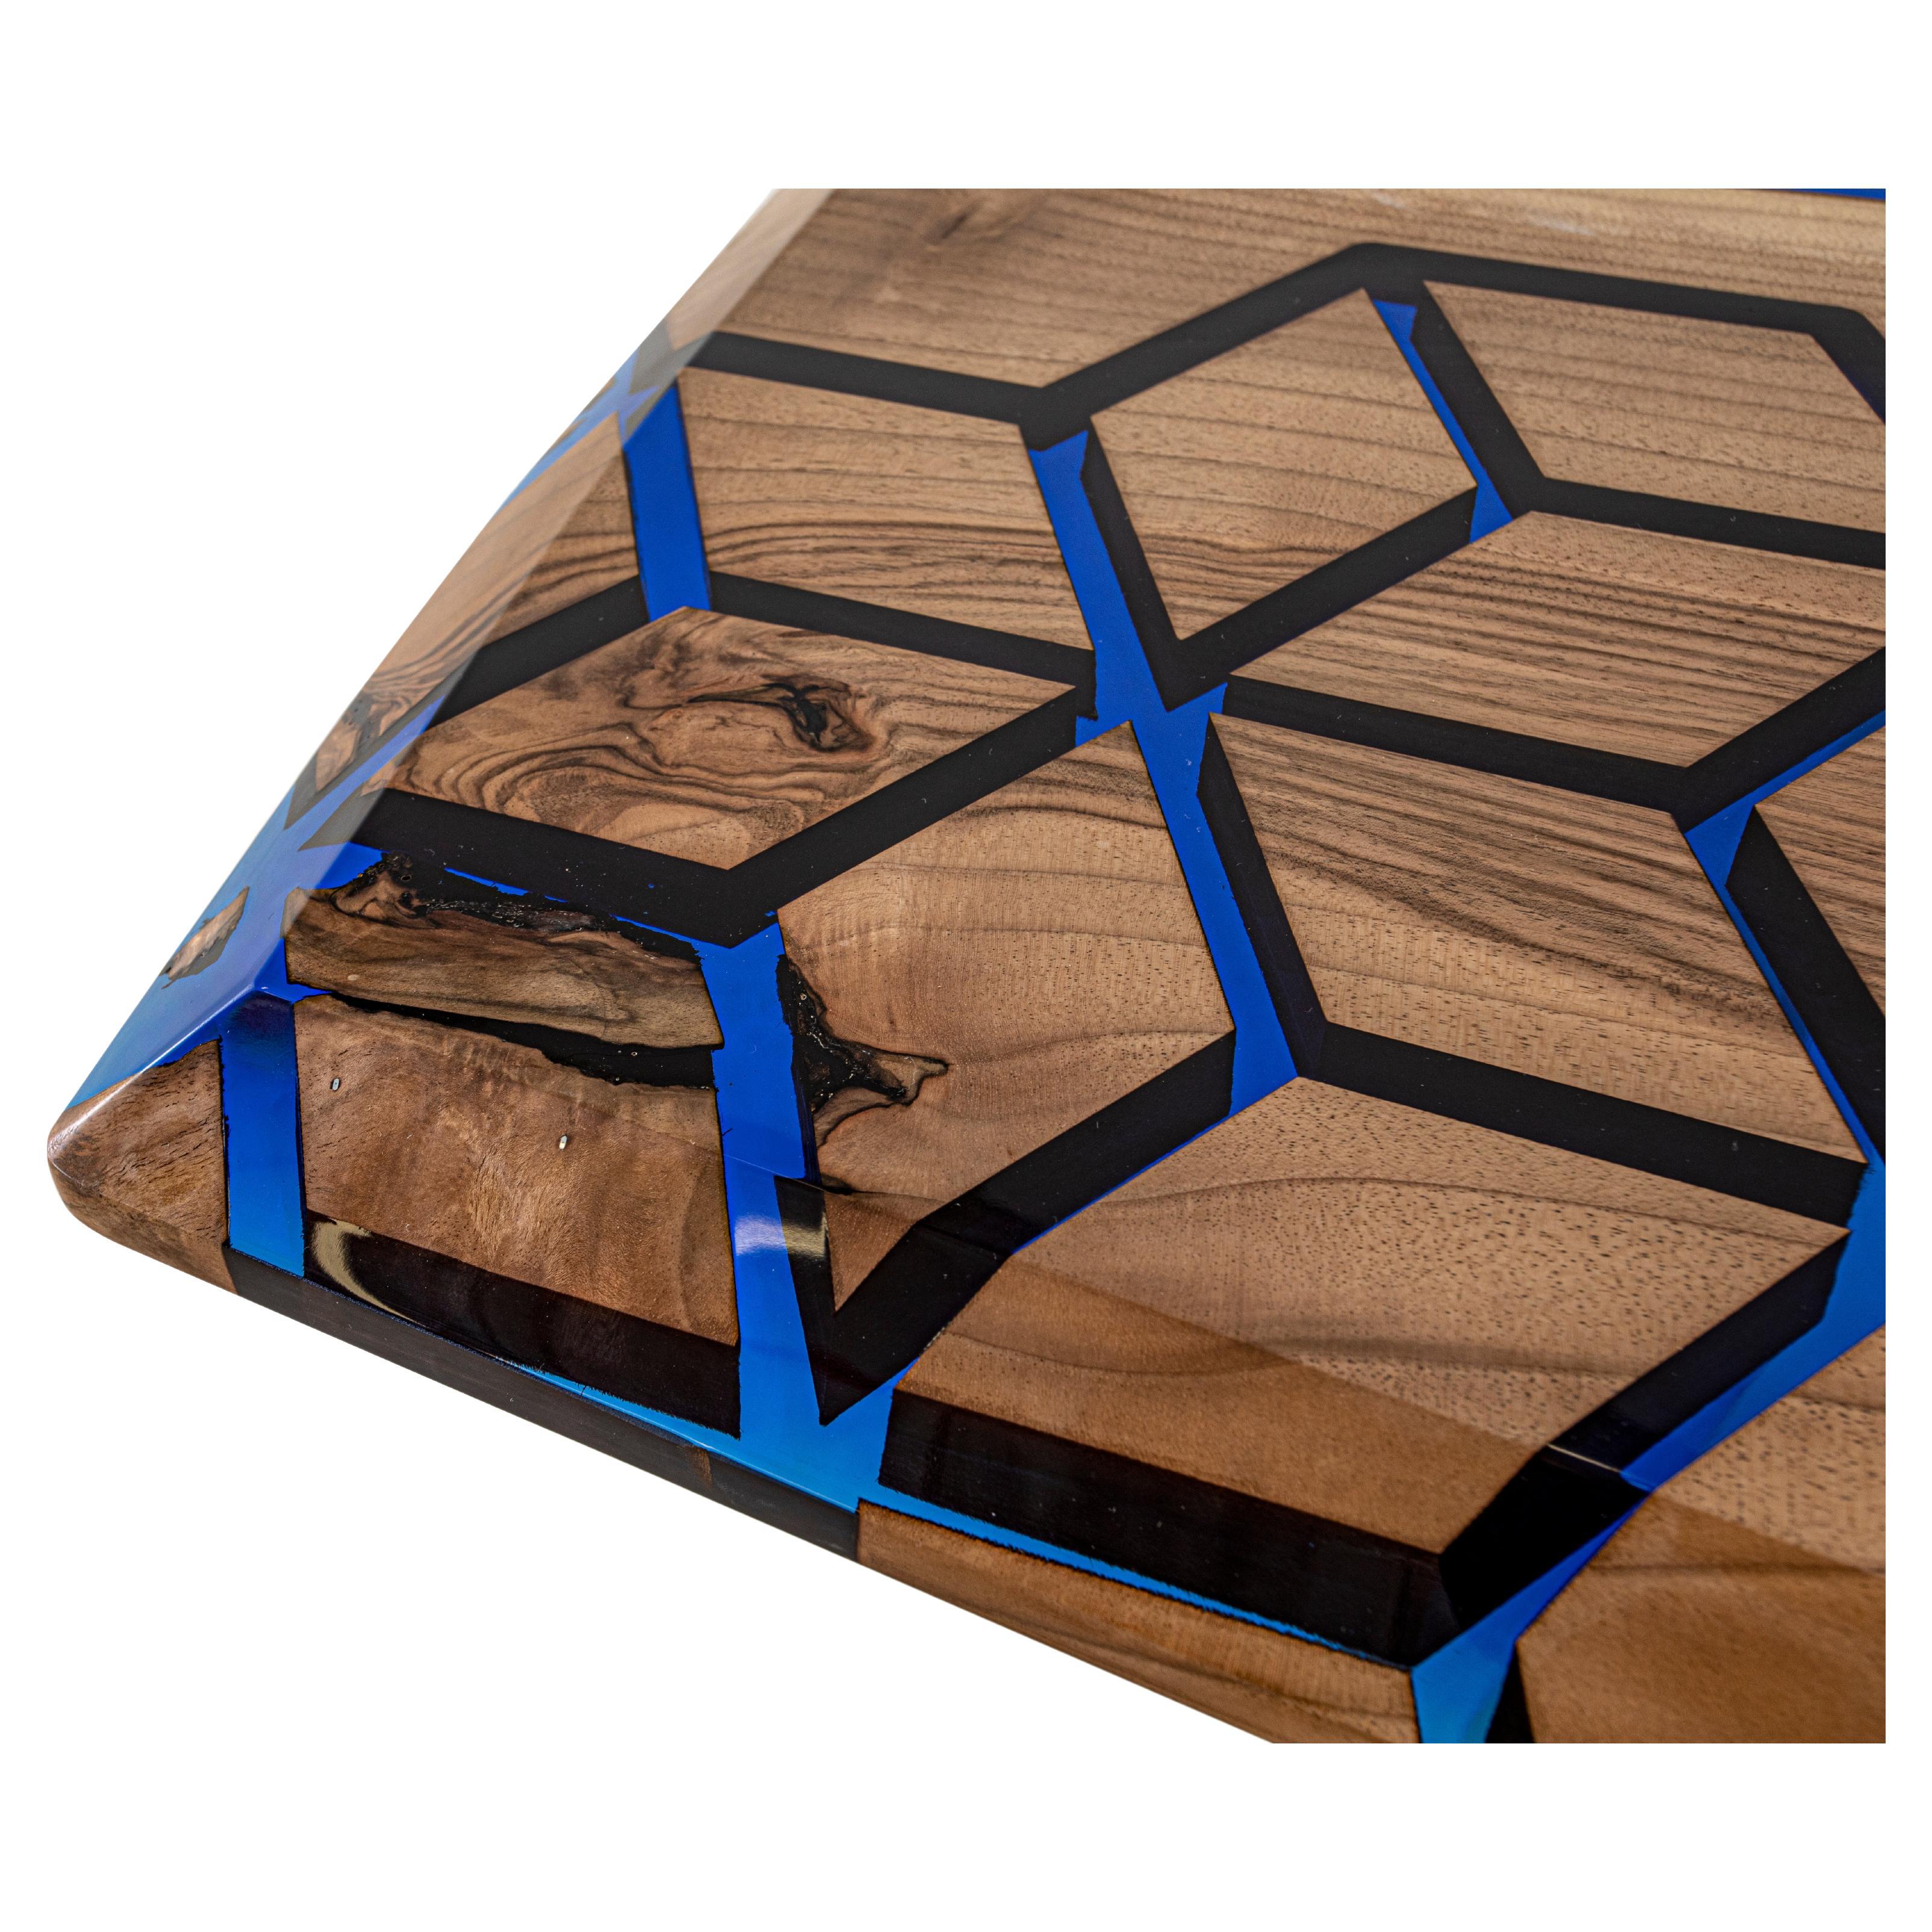 Table en résine époxy en forme de diamant

Cette table est fabriquée en bois de noyer. Nous avons combiné le bois de noyer avec une résine époxy bleu nuit. 

Des tailles, des couleurs et des finitions personnalisées sont disponibles !